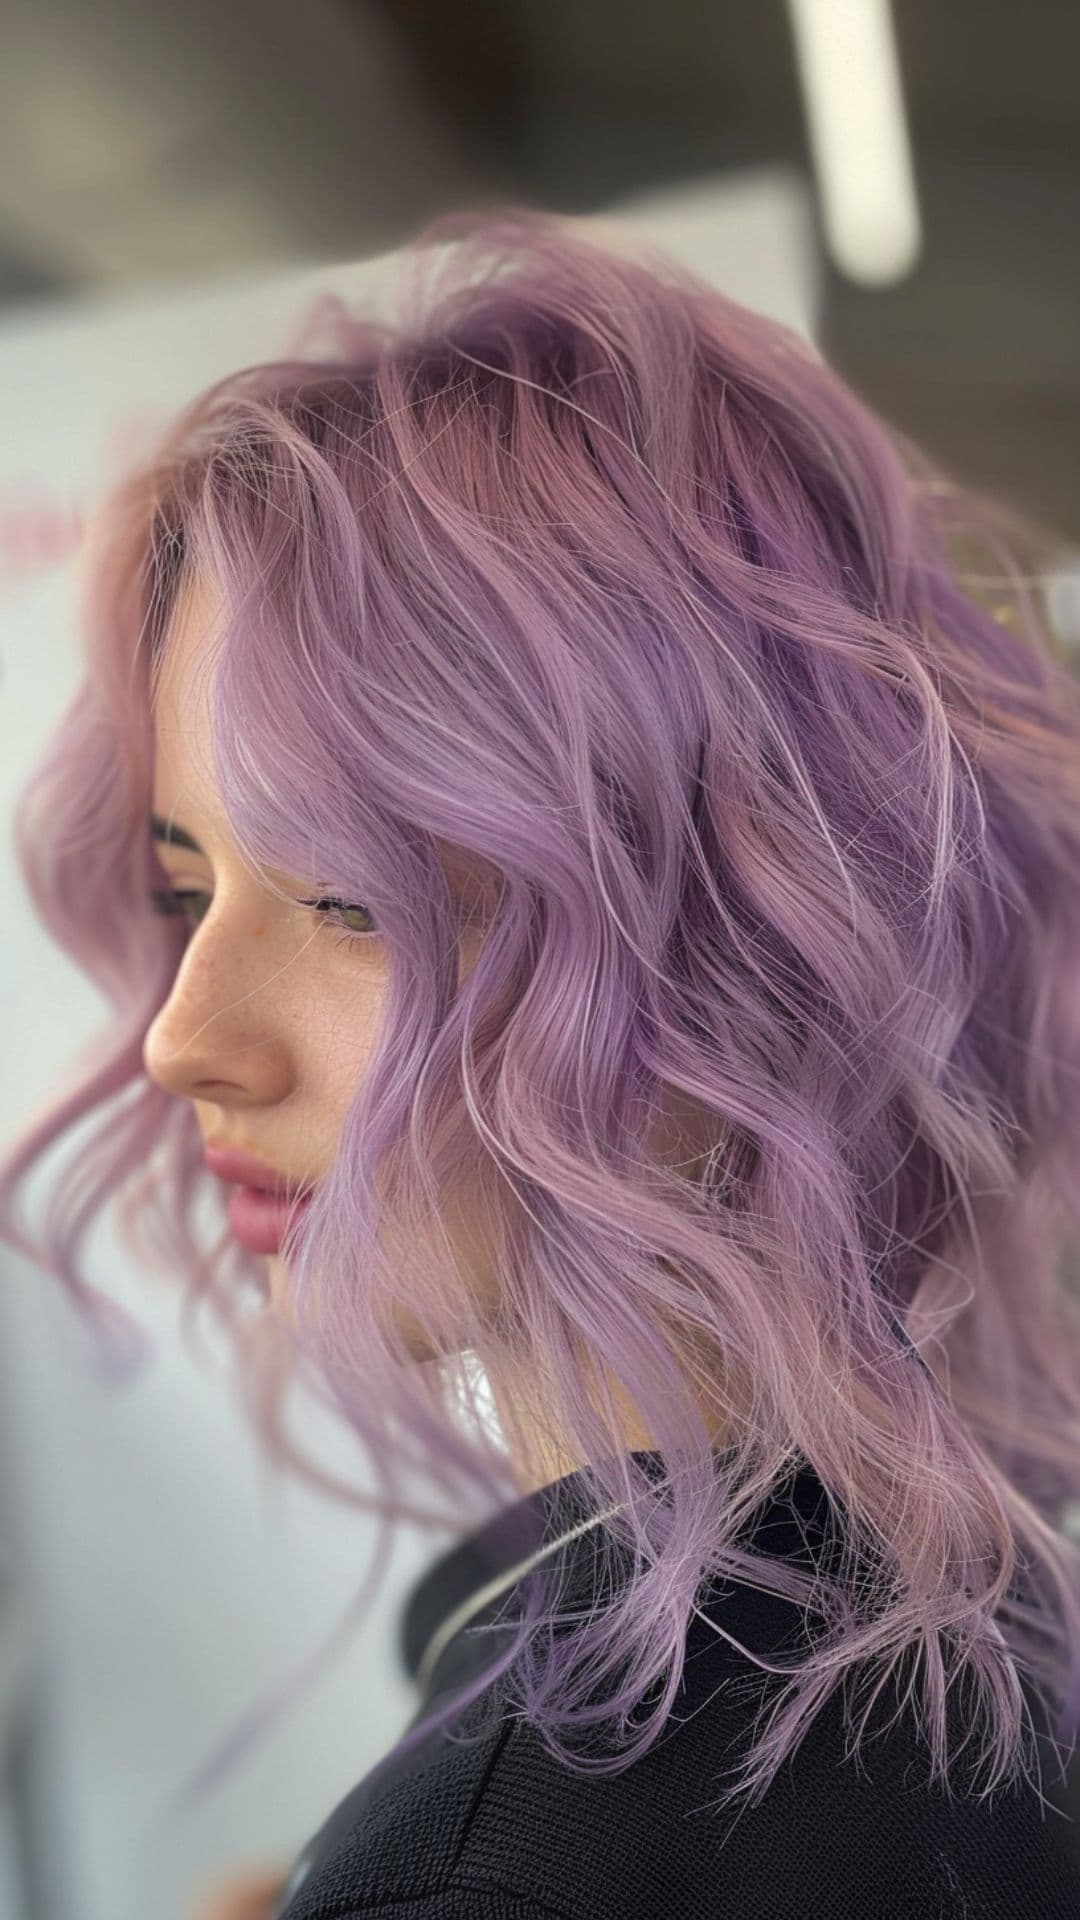 A woman modelling a pastel purple hair.